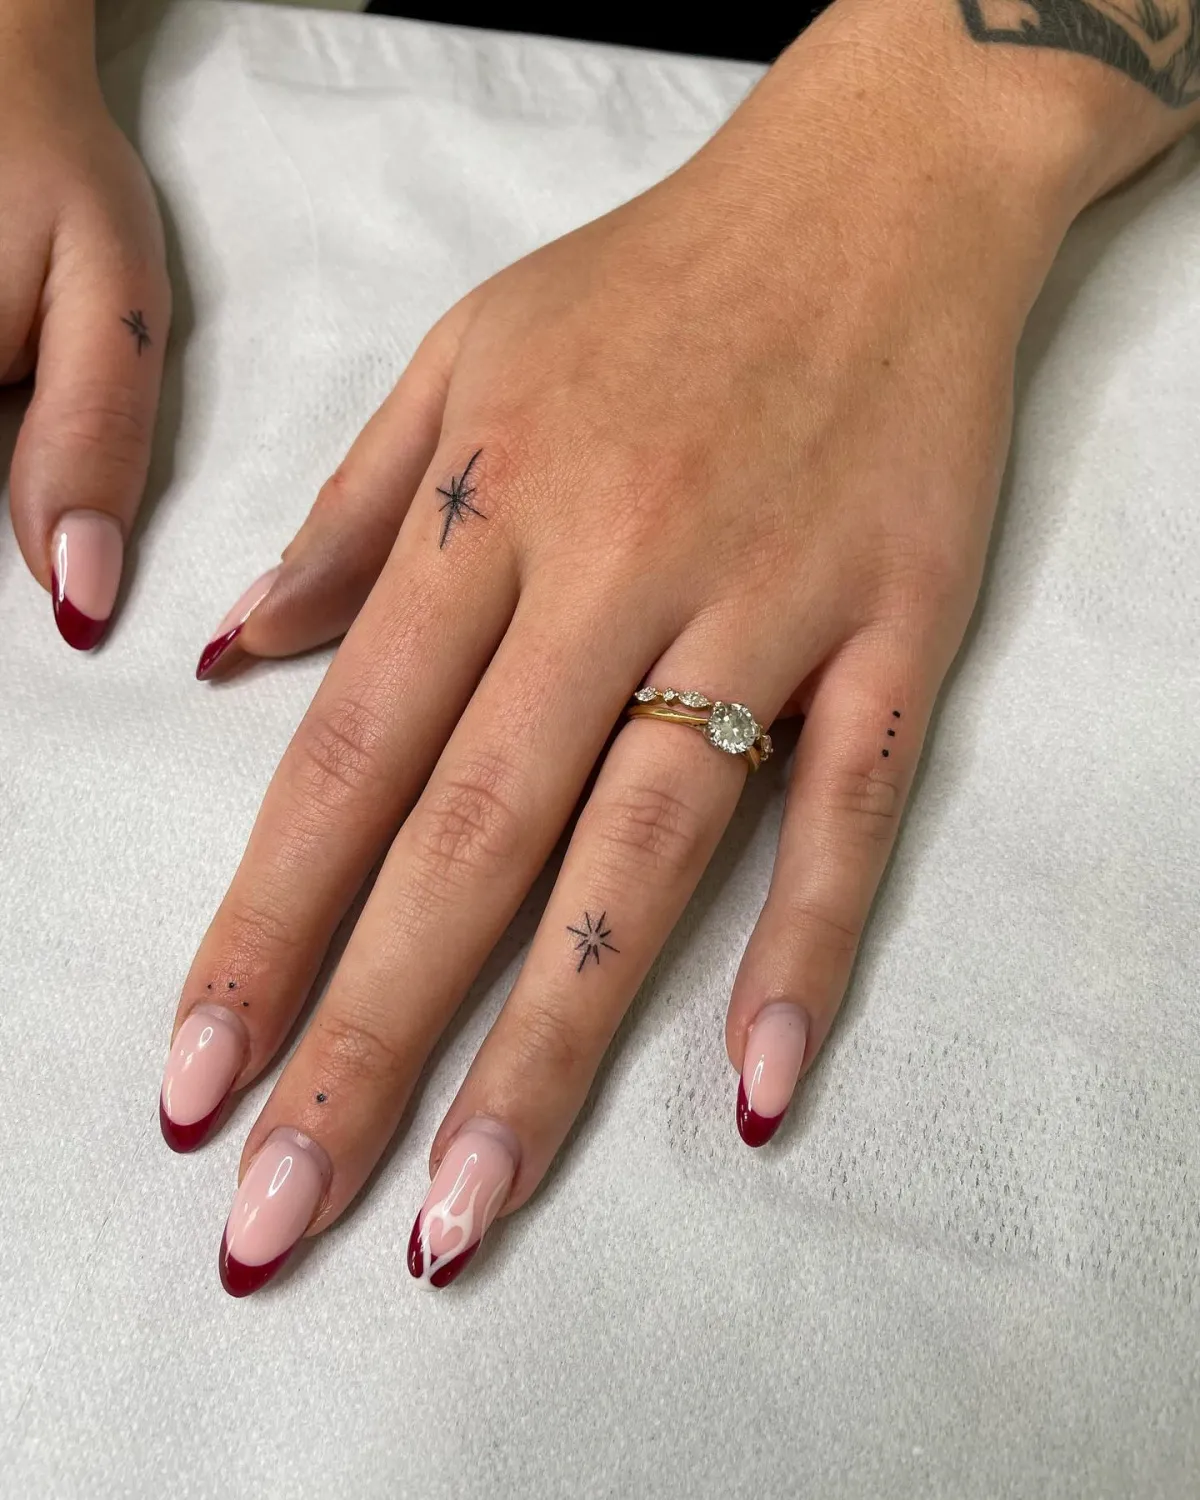 winzige finger tattoos mit sternen und punkten